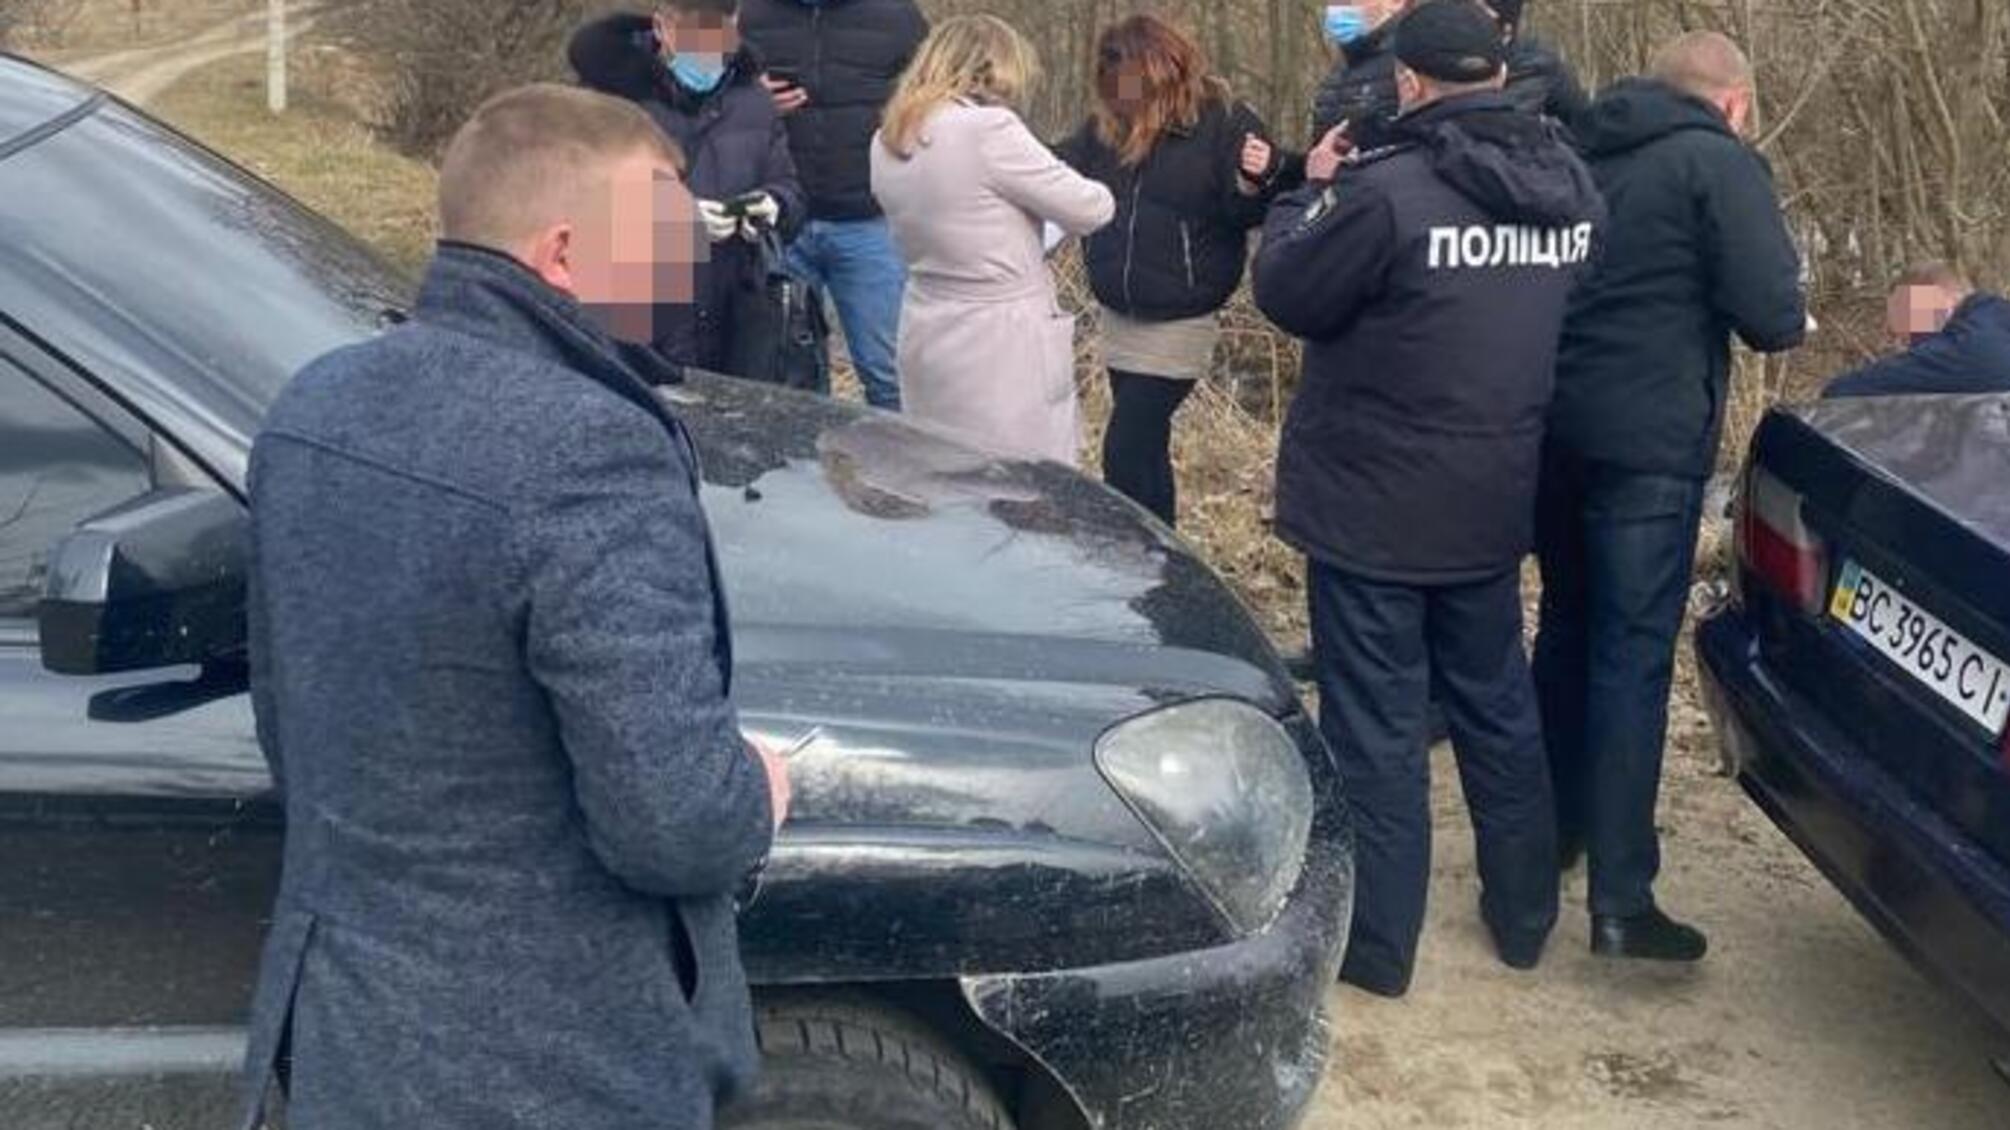 Близько кілограма «метамфетаміну», таблетки «екстазі» та «канабіс» – на Львівщині правоохоронці затримали групу наркозбувачів